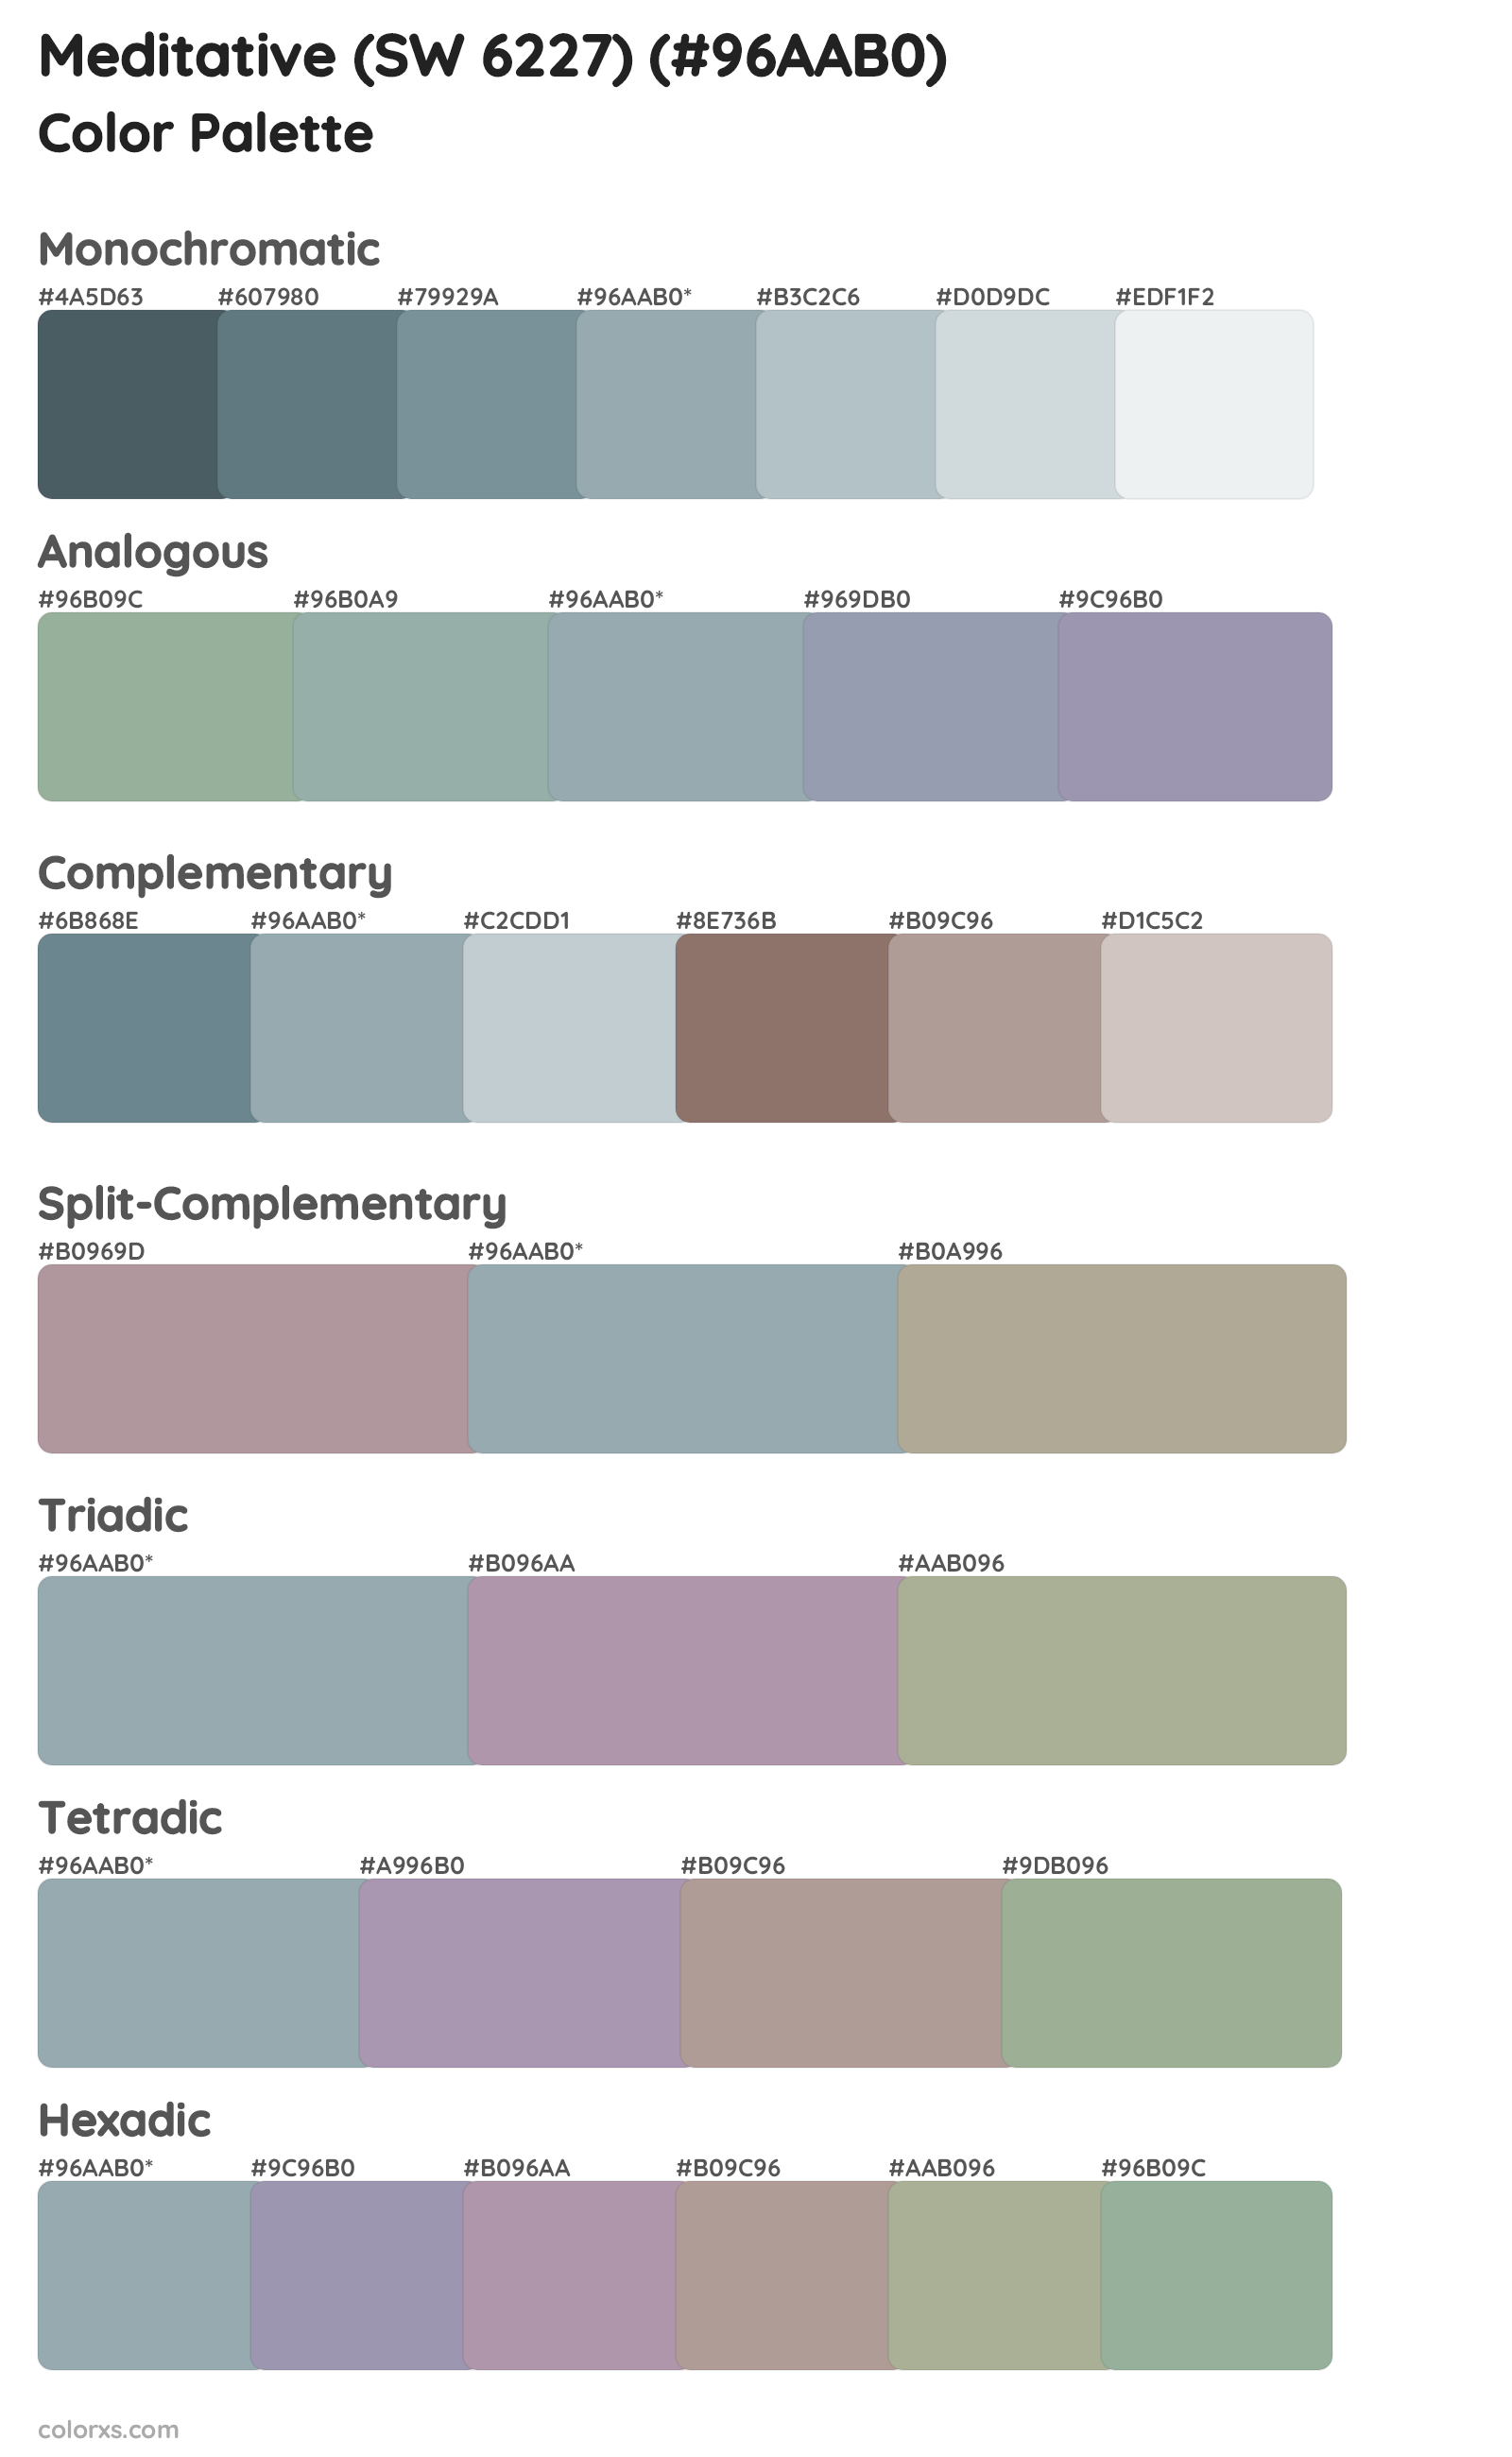 Meditative (SW 6227) Color Scheme Palettes